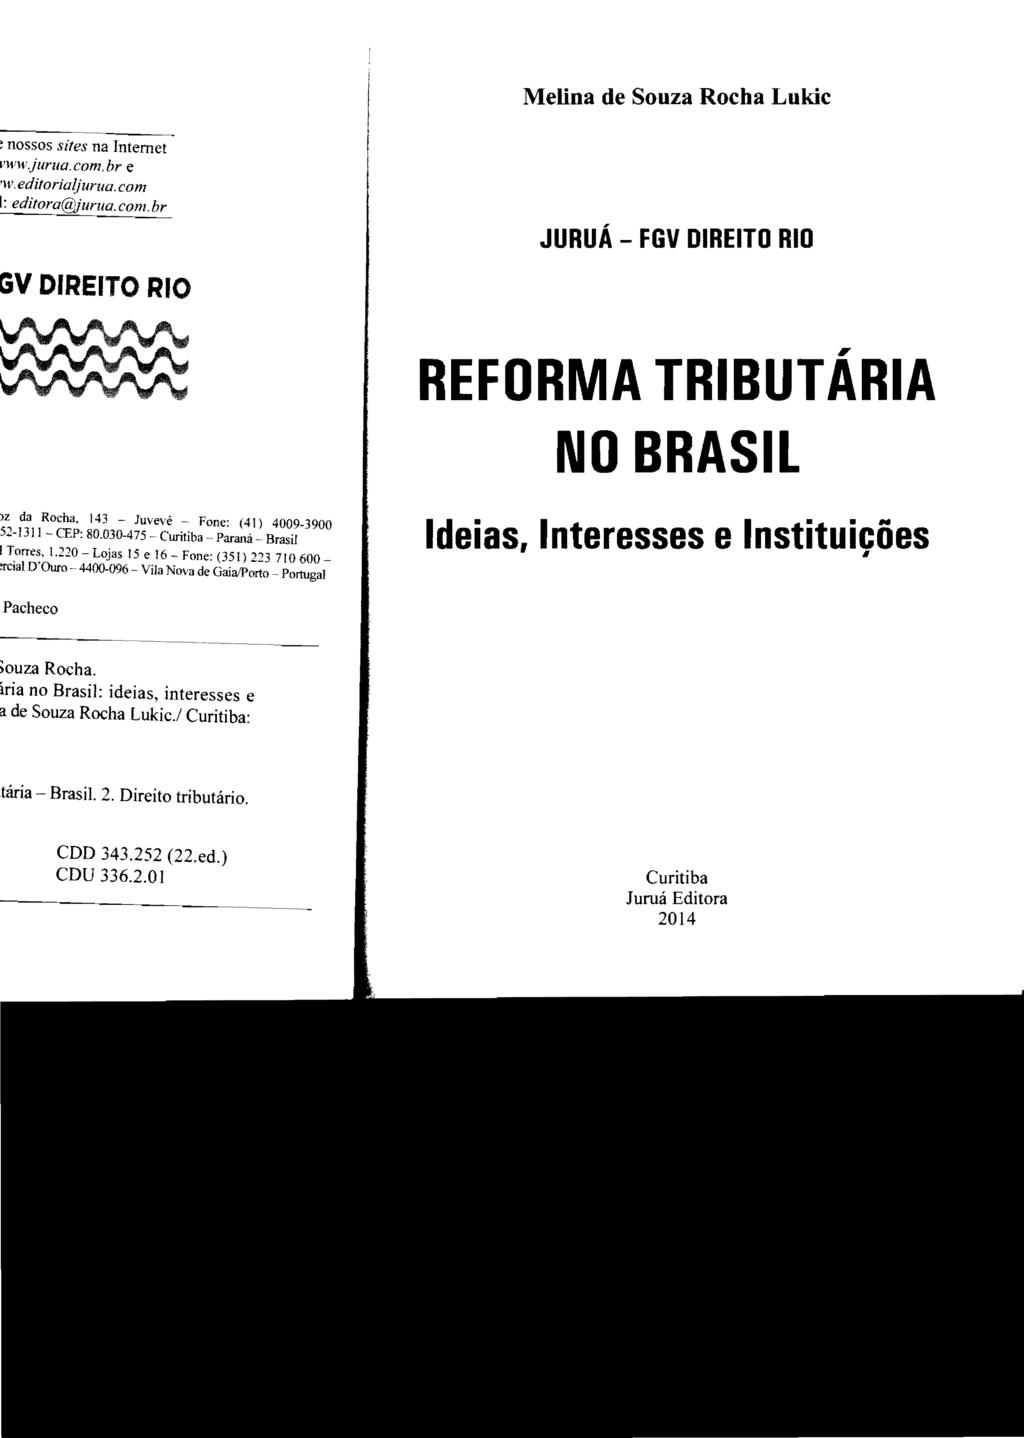 Metina de Souza Rocha Lukic JURUÁ - FGV DIREITO RIO REFORMA TRIBUTÁRIA